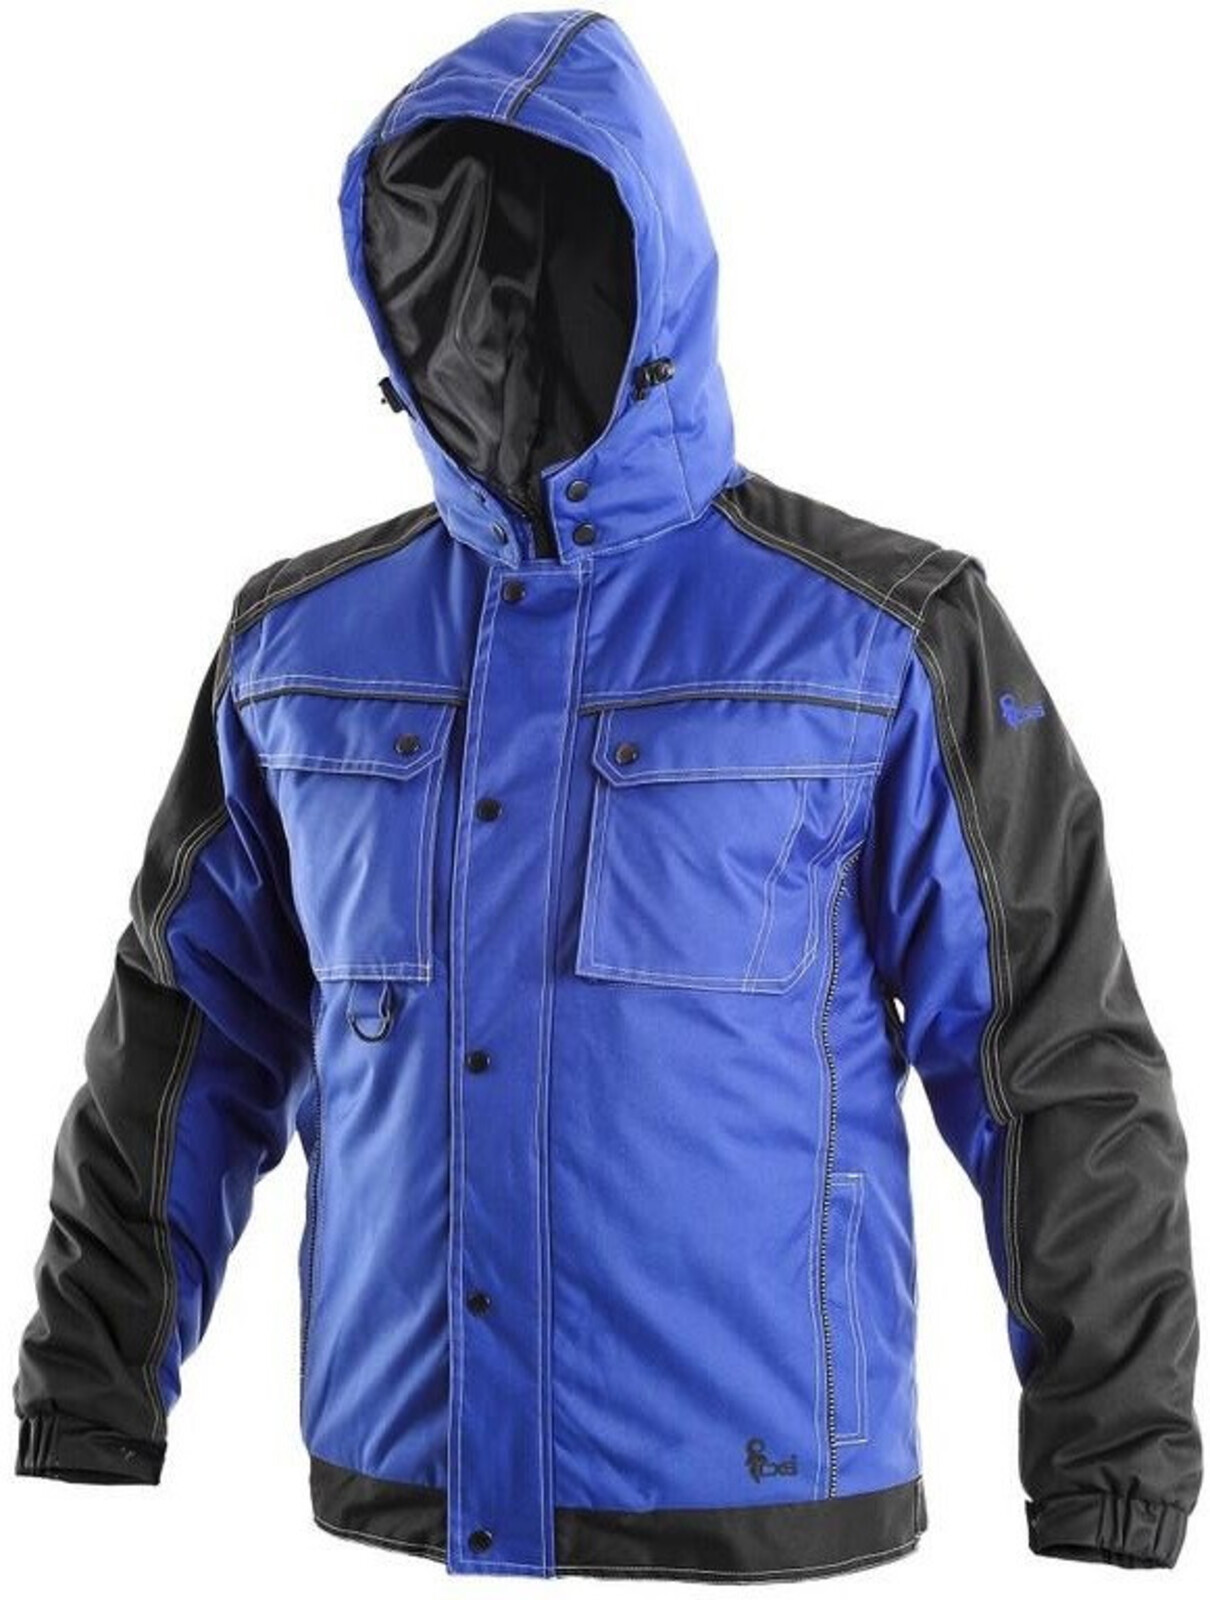 Pánska zimná bunda CXS Irvine 2v1 - veľkosť: XXL, farba: modrá/čierna